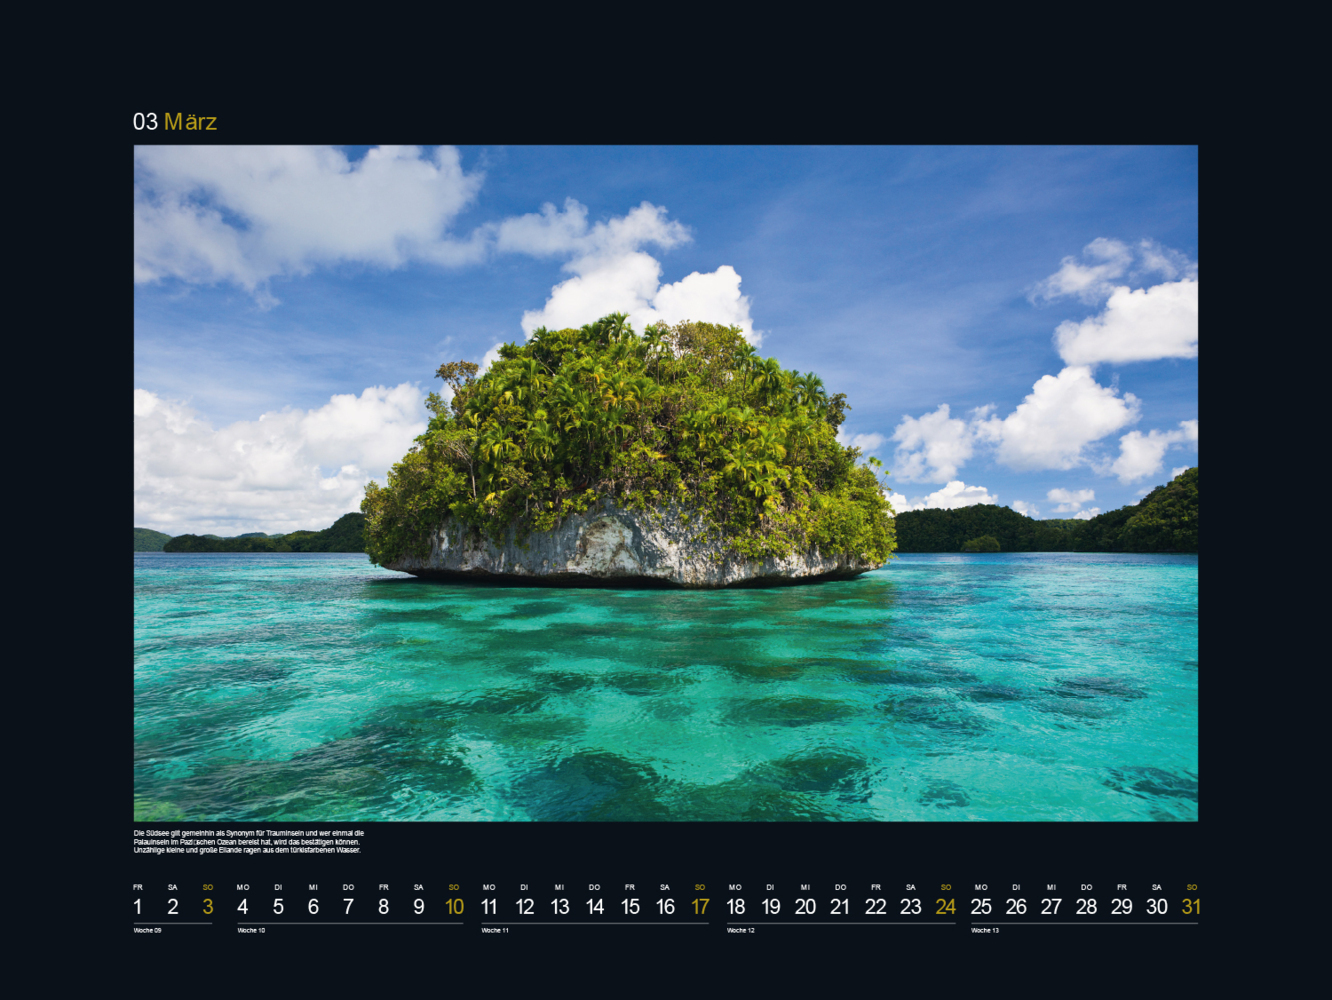 Bild: 9783965912540 | UNESCO Naturerbe der Welt - KUNTH Wandkalender 2024 | Kalender | 14 S.